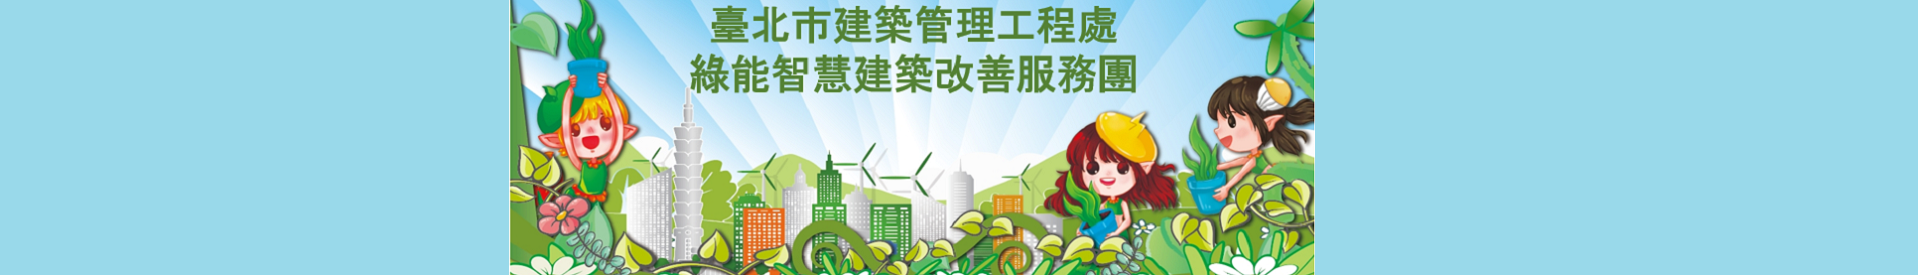 臺北市建築管理工程處綠能智慧建築改善服務團